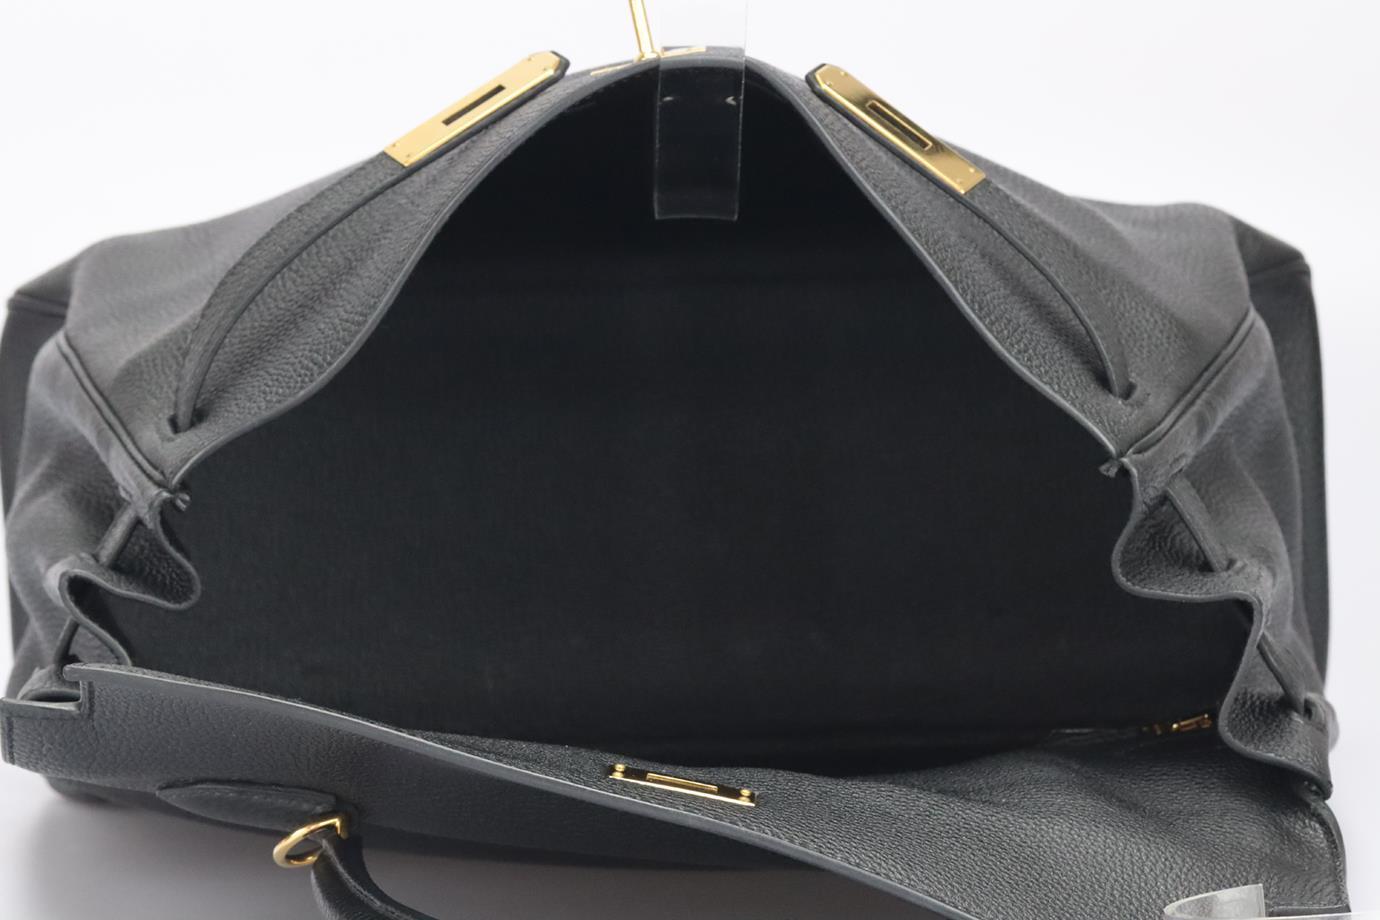 Hermès 2011 Kelly Retourne 35cm Togo Leather Bag For Sale 6